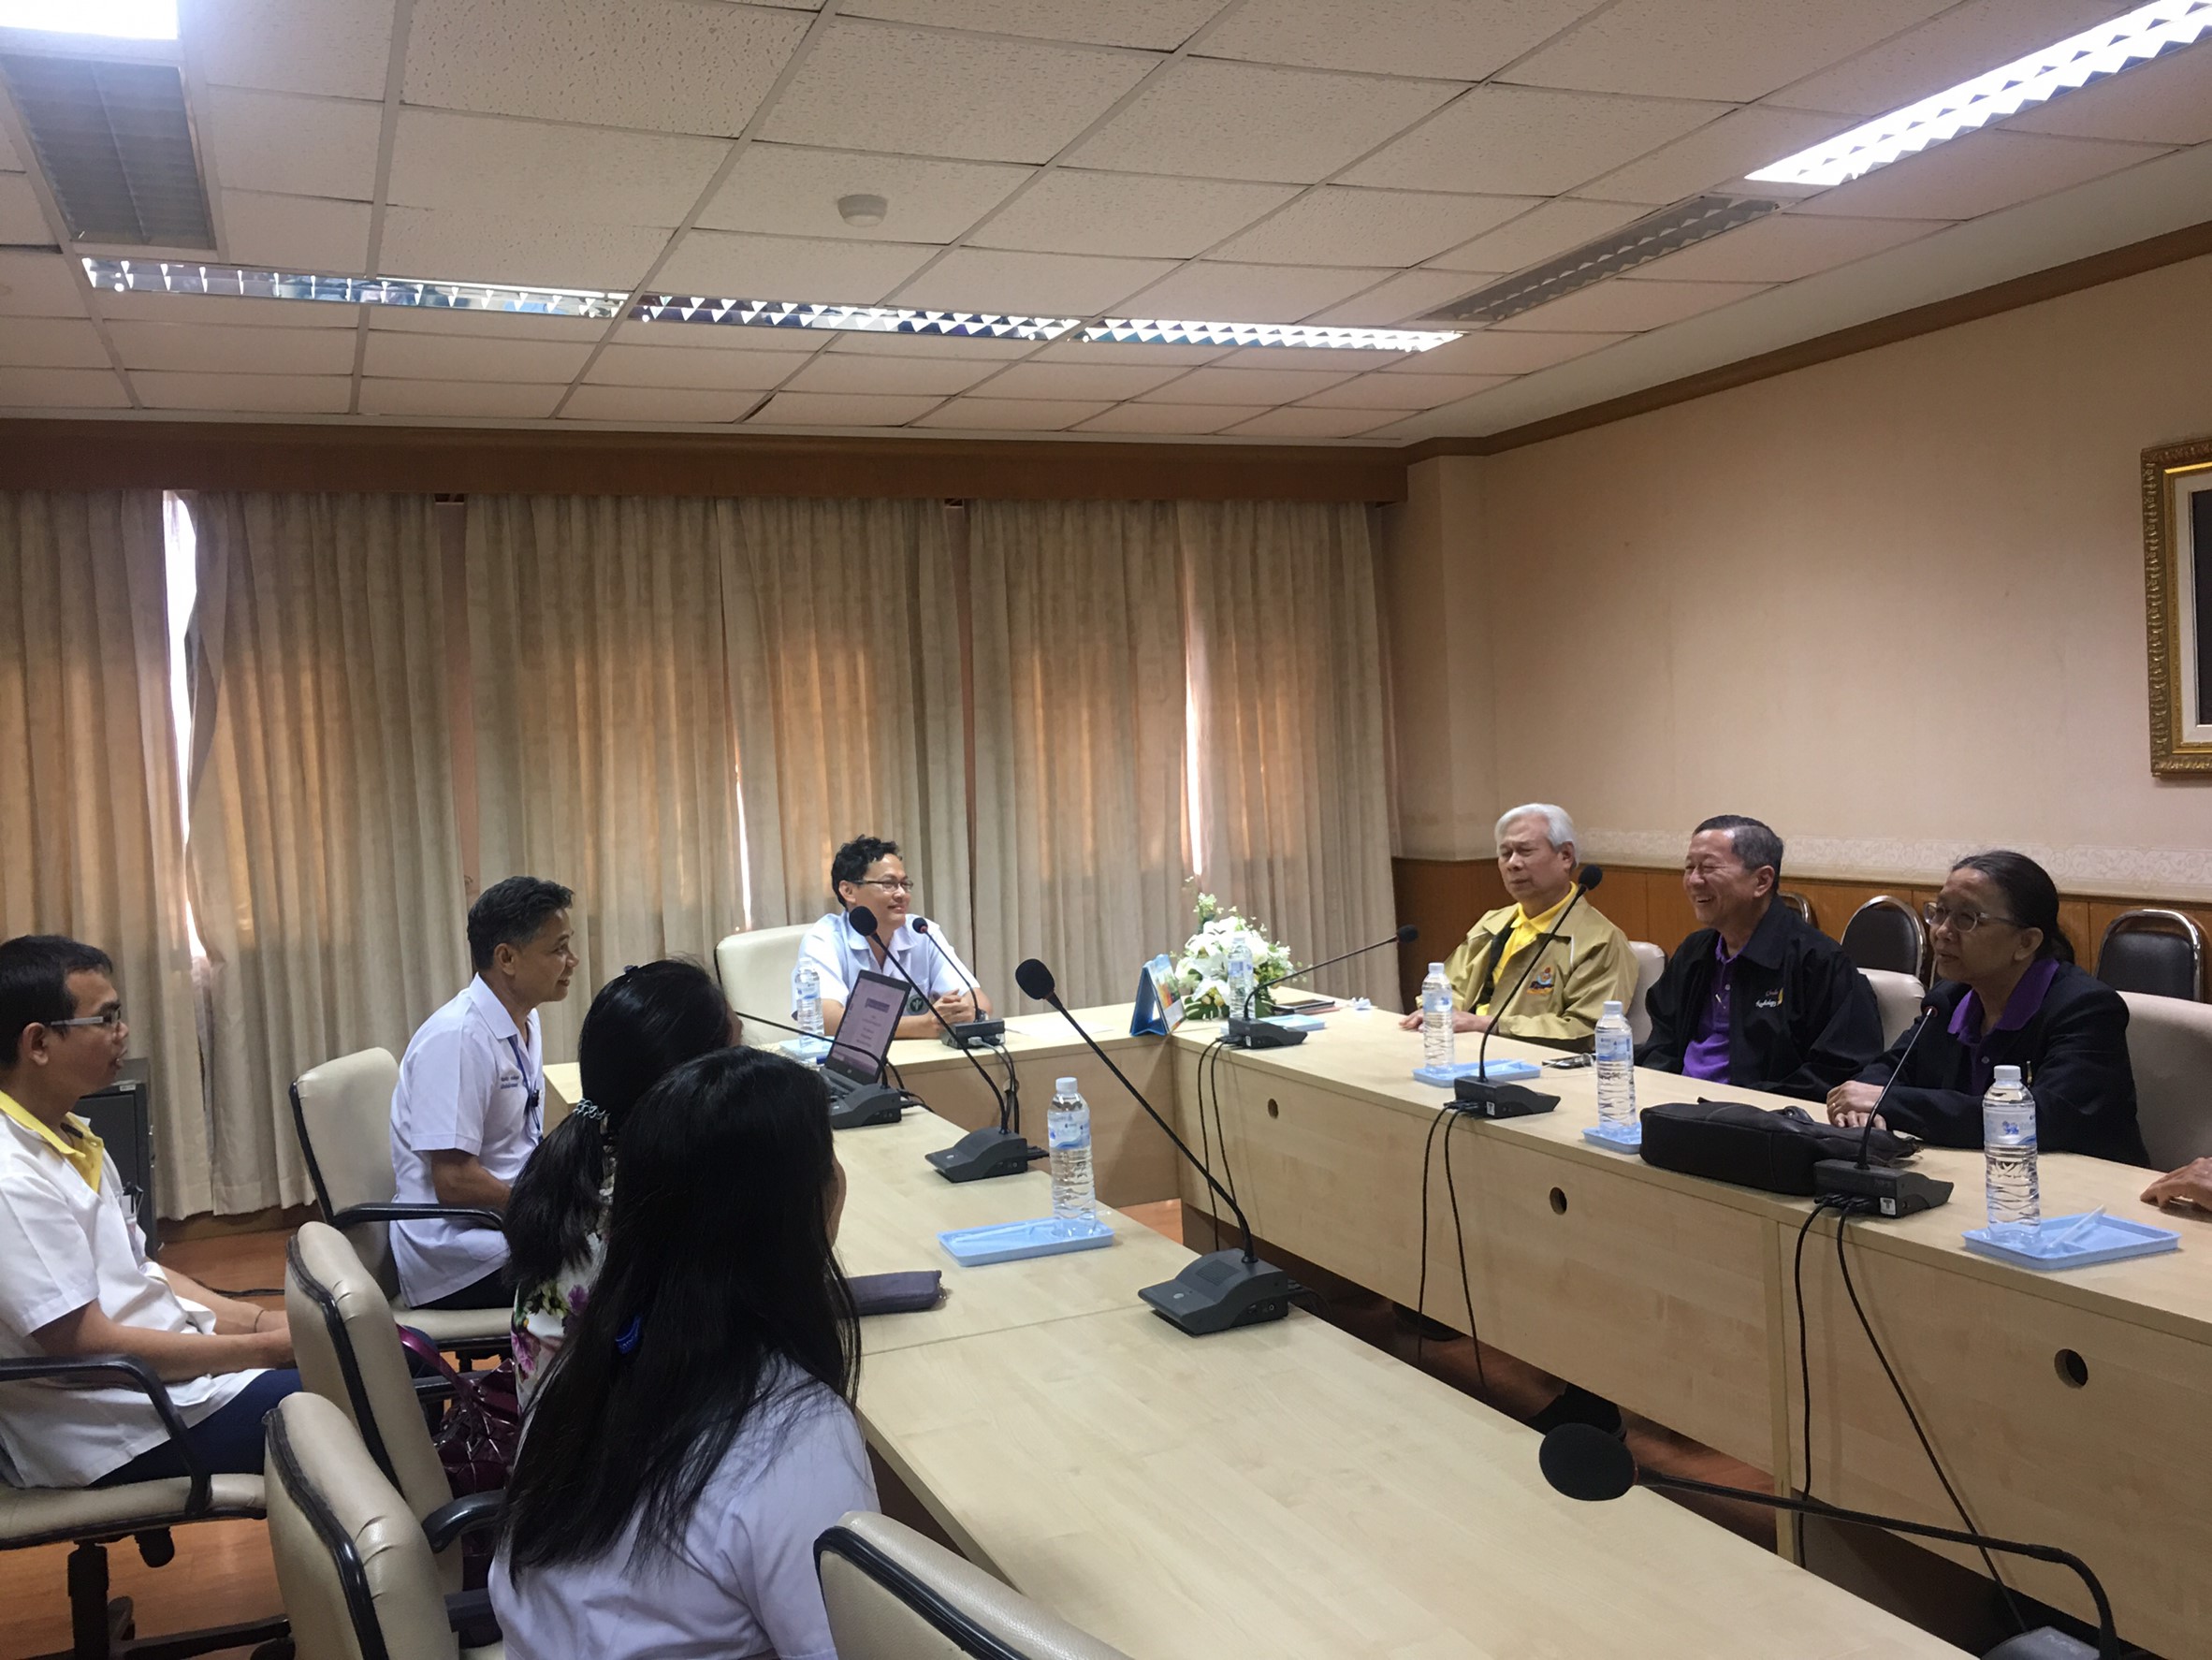 ประชุมวิชาการร่วมกับรังสีการแพทย์แห่งประเทศไทย ครั้งที่17 27-29 พ.ย. - พร้อมเข้าเยี่ยมและให้กำลังใจหน่วยงานรังสีวิทยาในพื้นที่จังหวัดอุบลราชธานีระหว่างวันที่ 25-26 พฤศจิกายน 2562 30